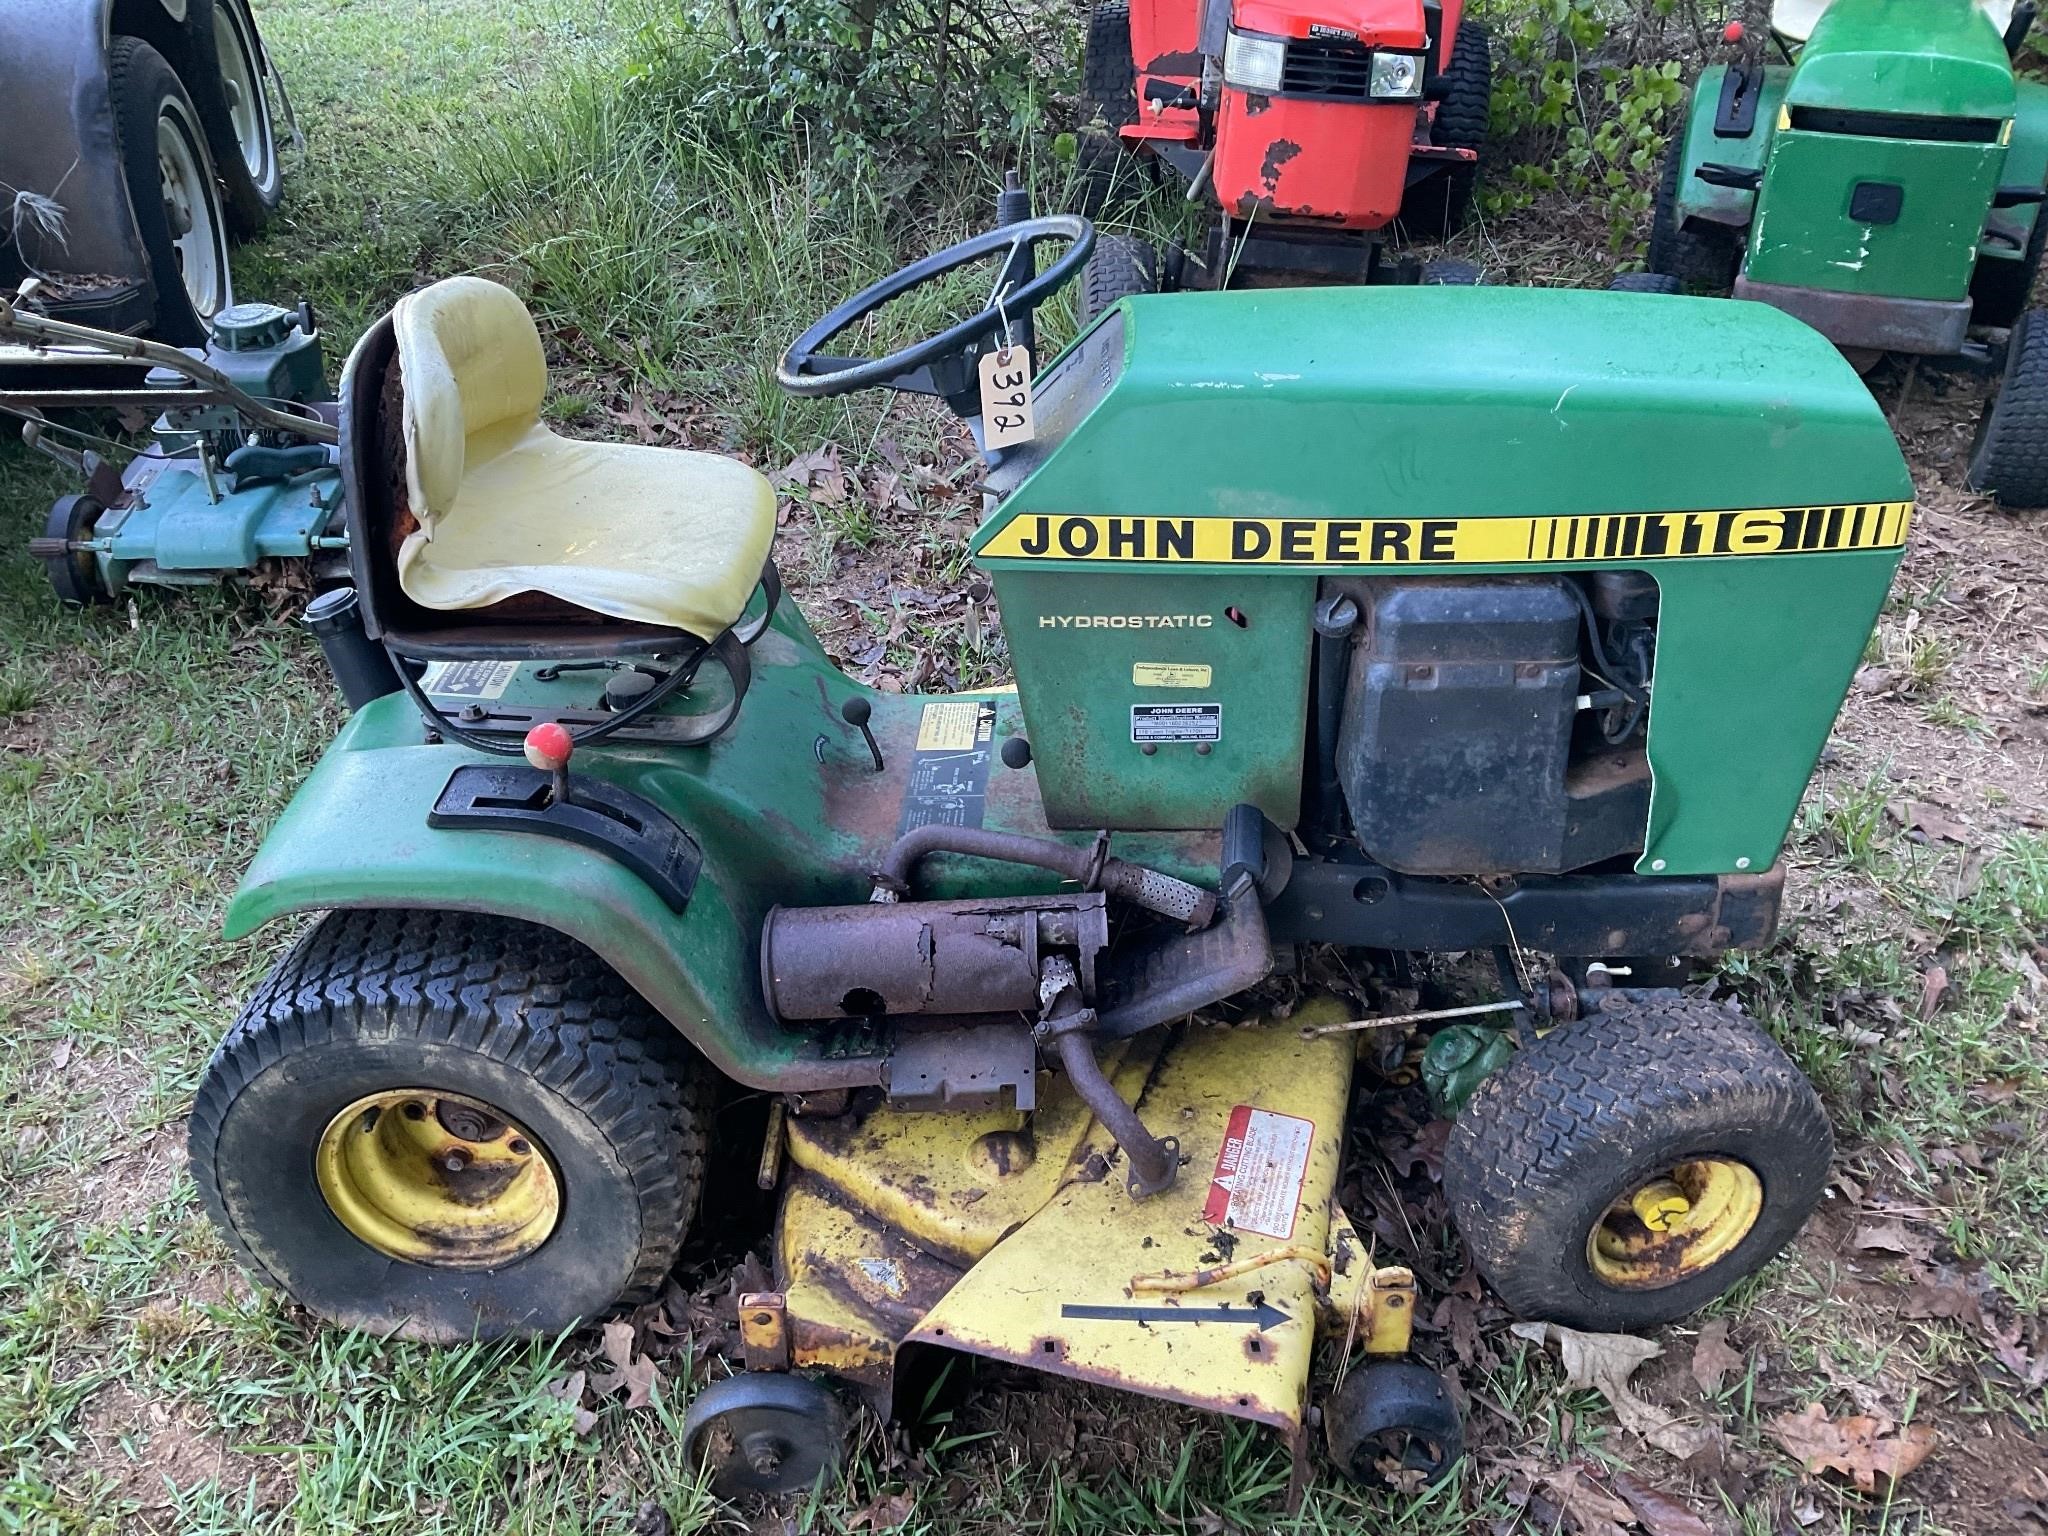 John Deere 116 tractor